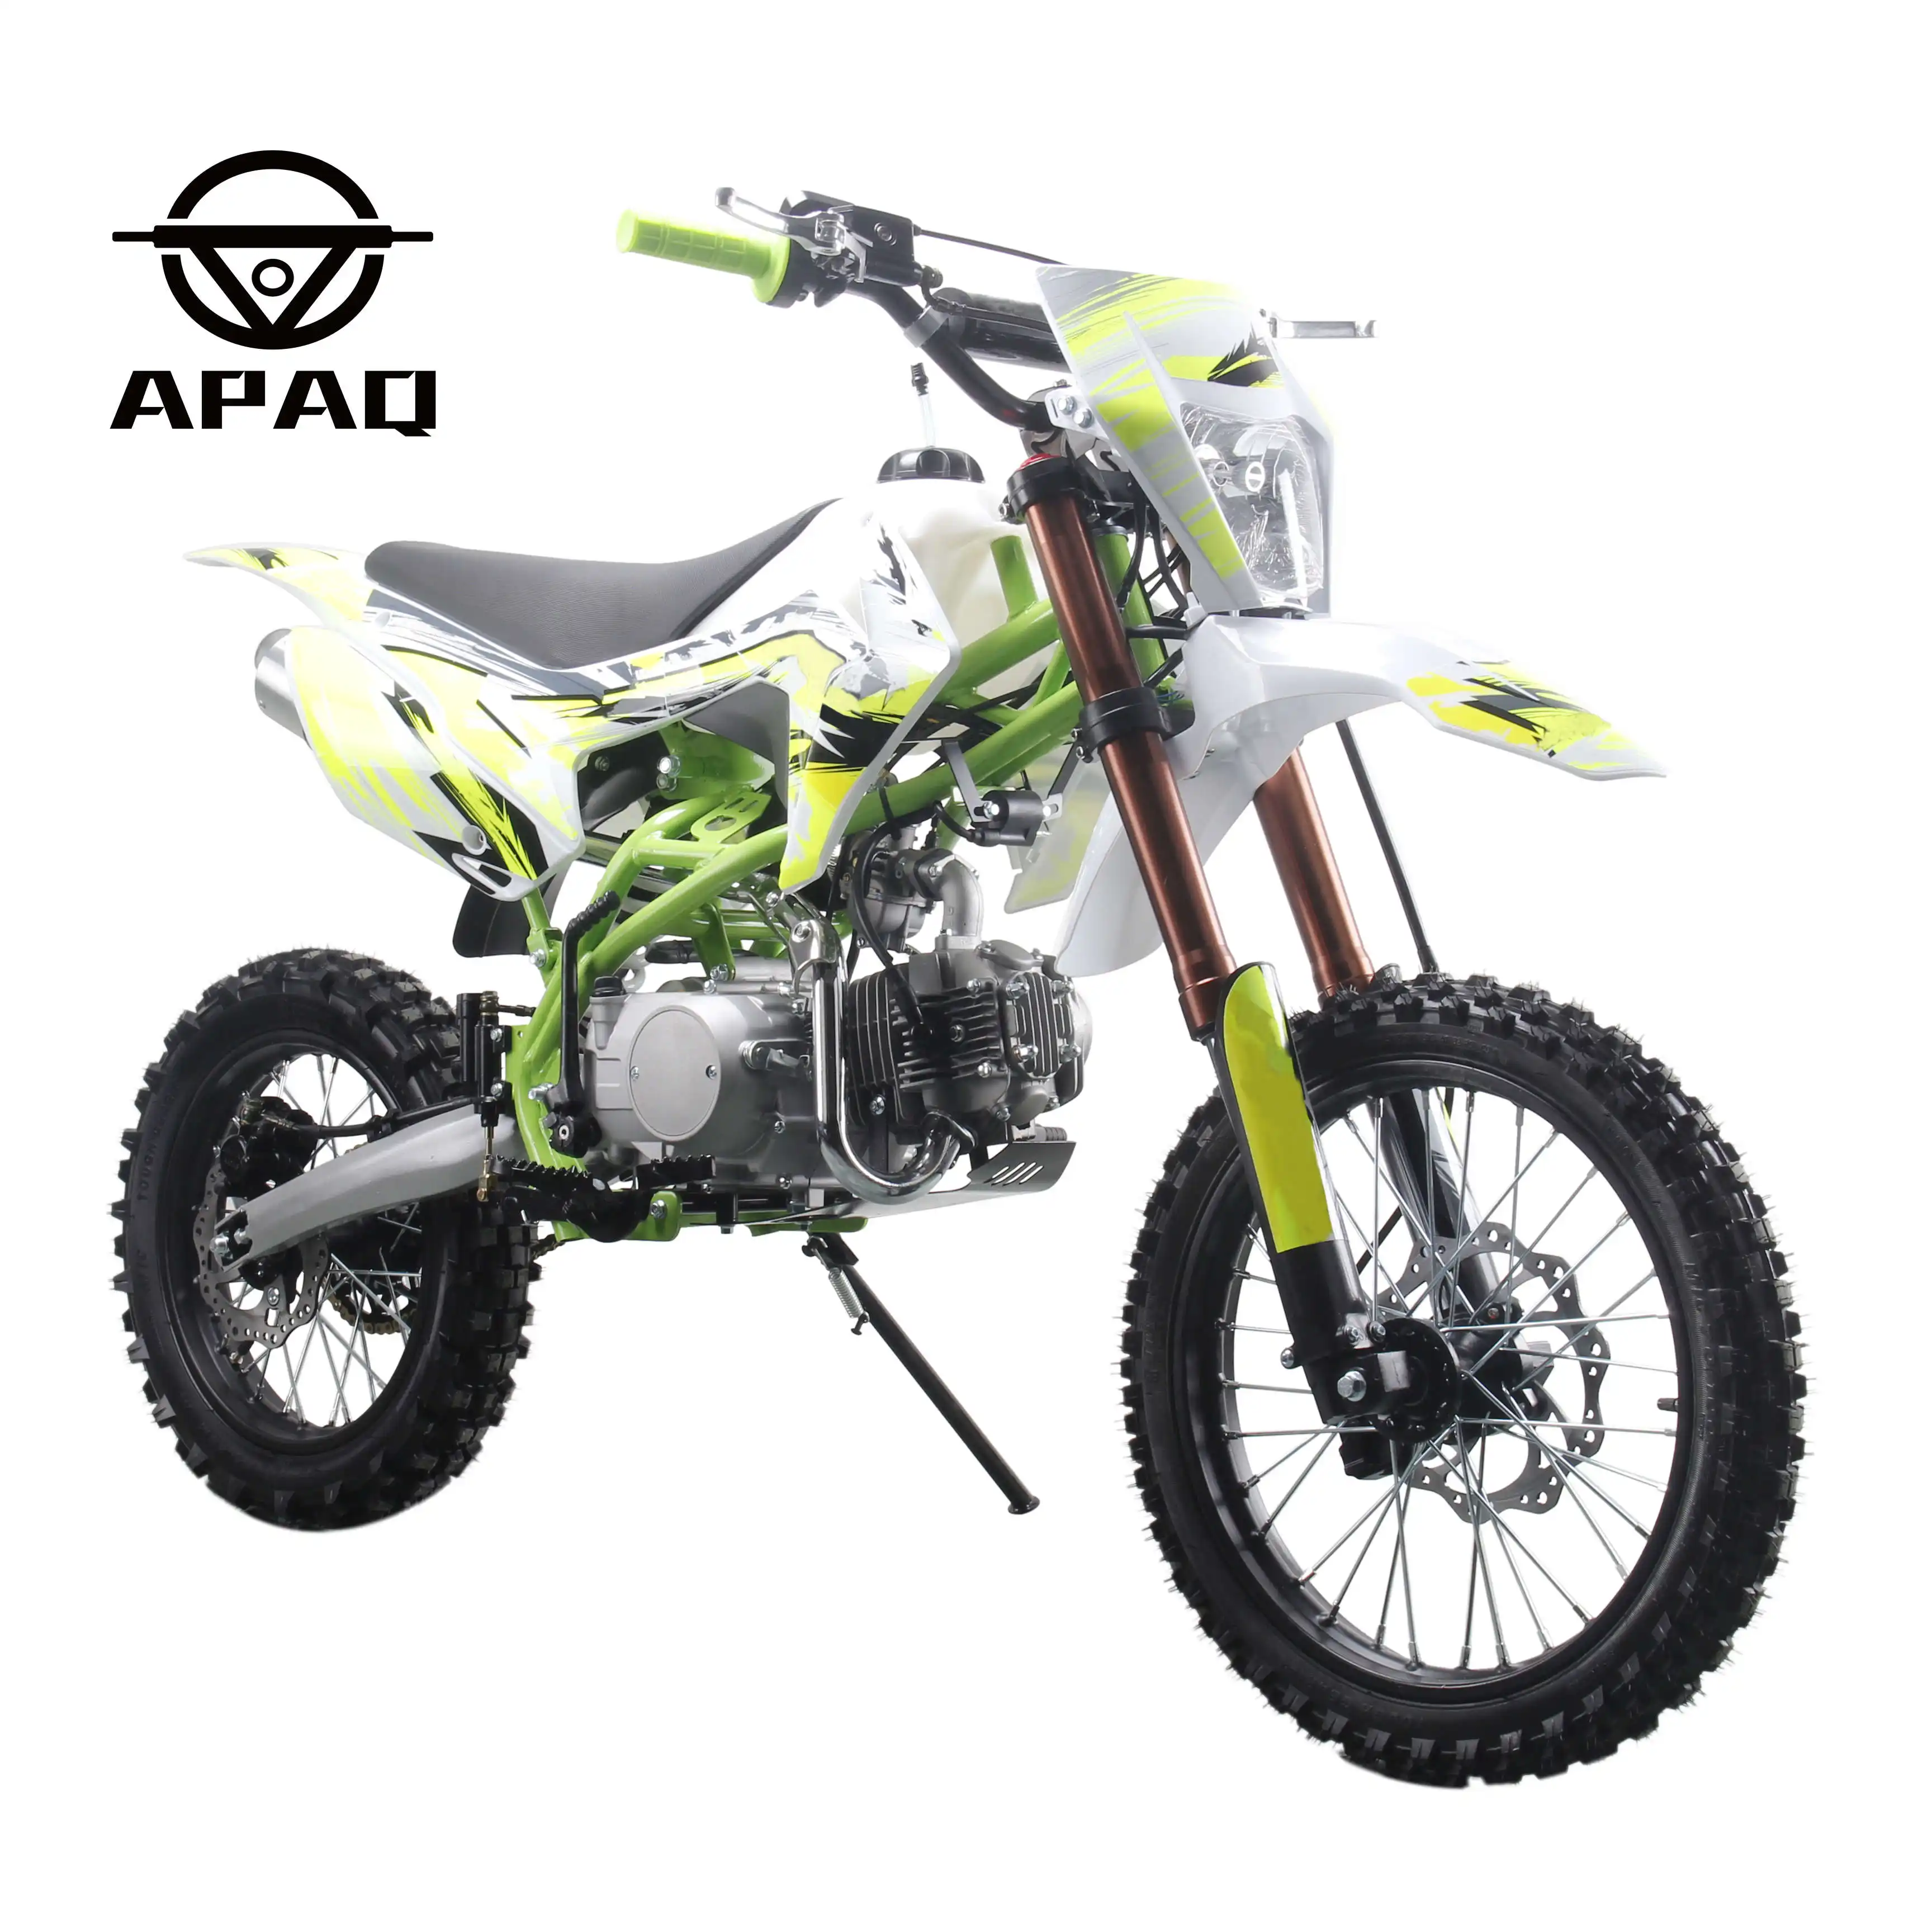 Apq 70cc 90cc 110cc bicicleta de moto, gás de potência automática de 4 tempos epa ce para crianças motocicleta mini